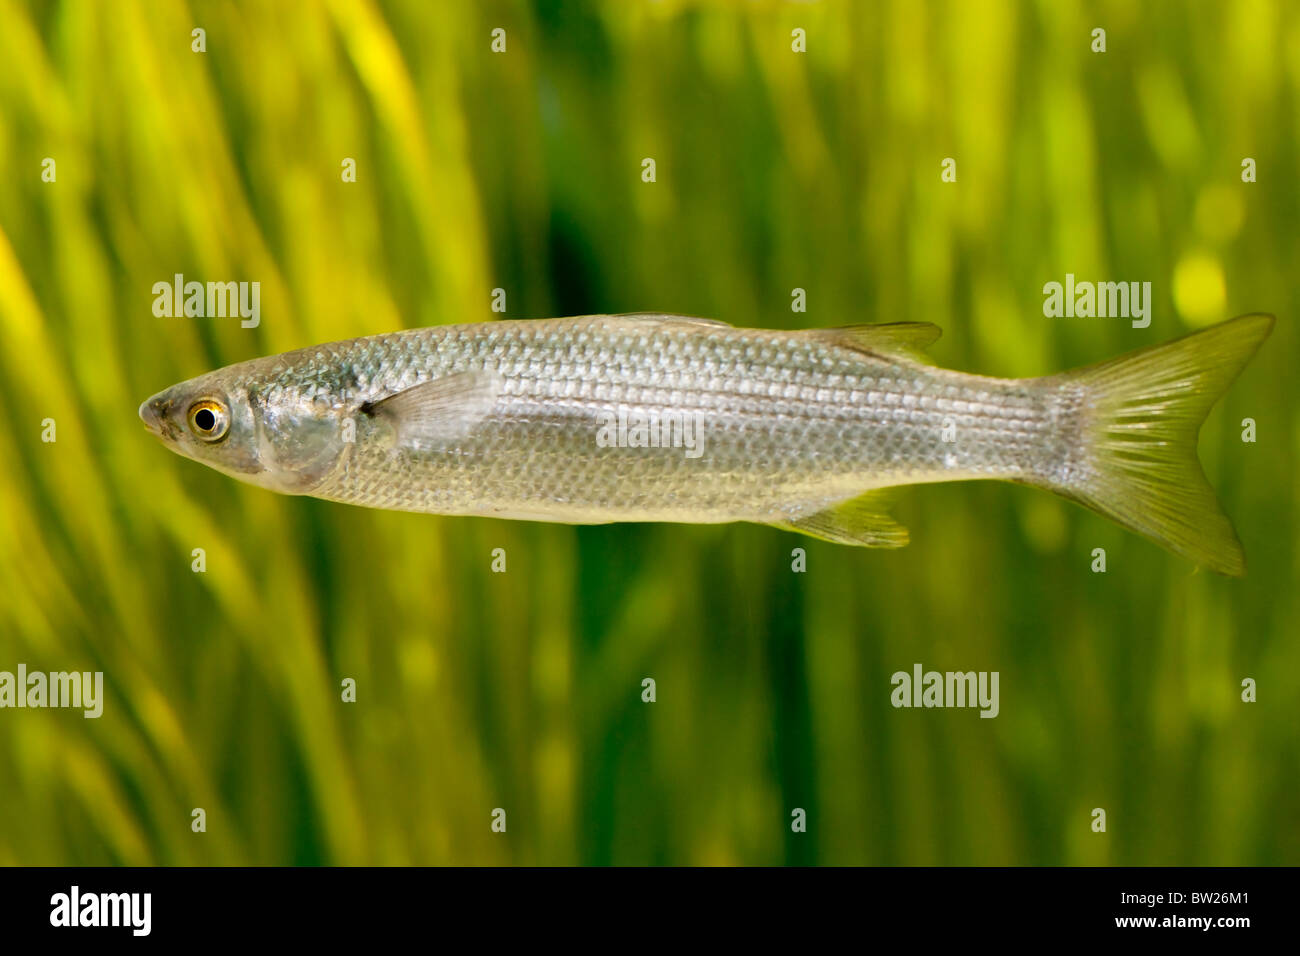 Herring fish (Clupea harengus) Stock Photo